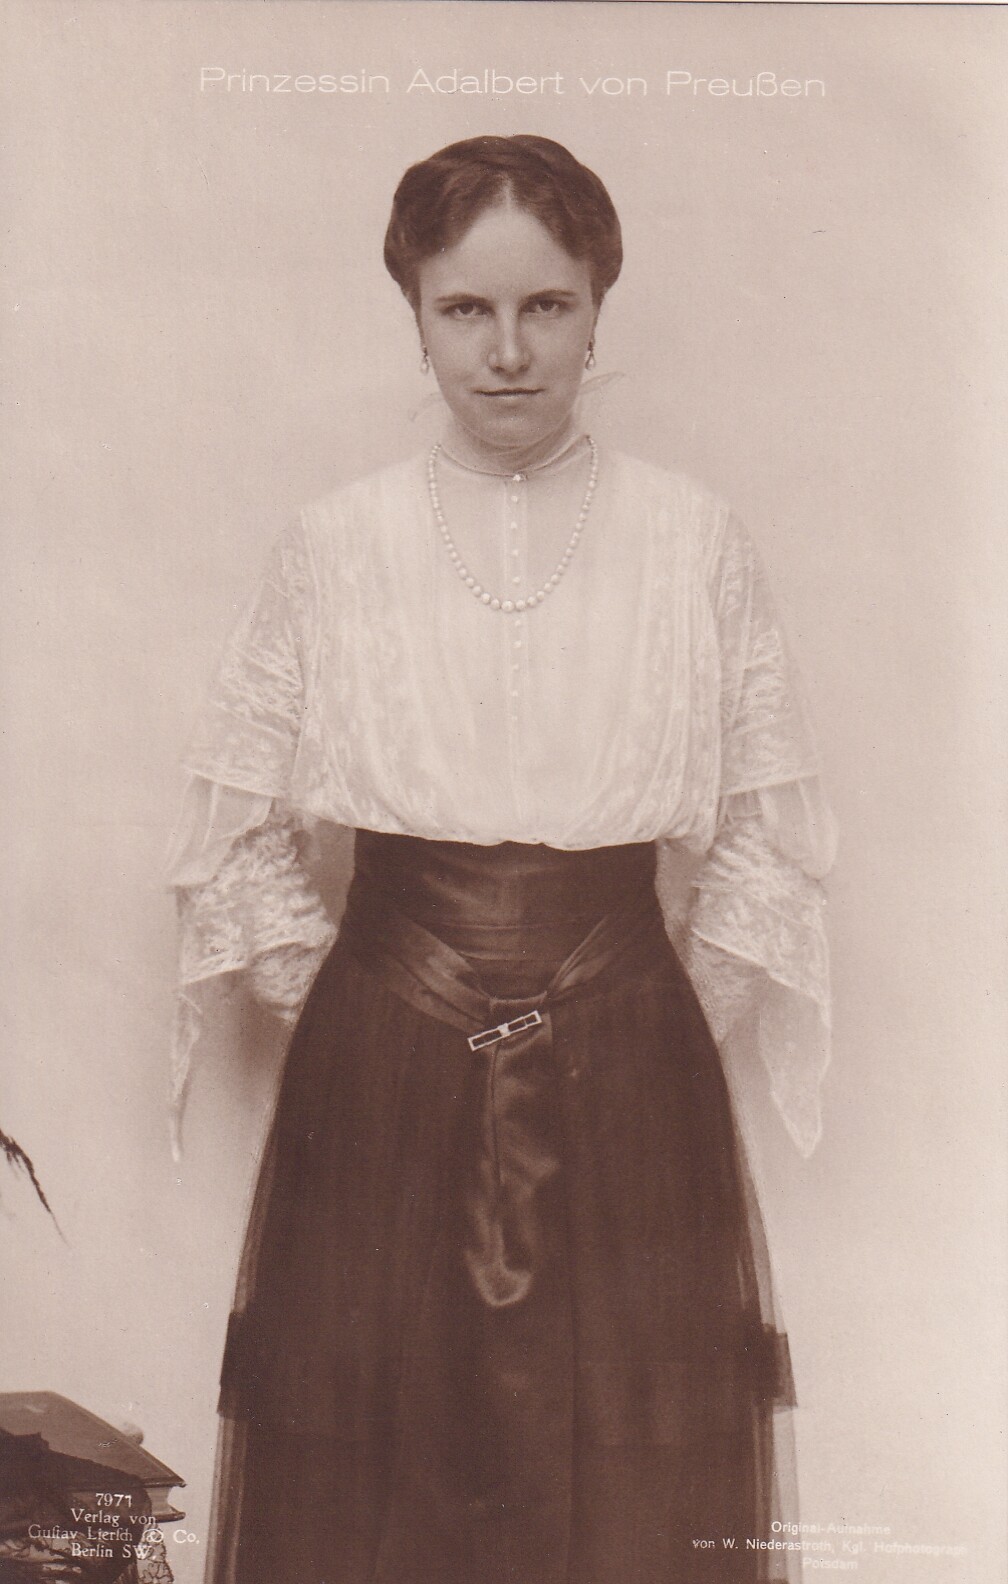 Bildpostkarte mit Foto der Prinzessin Adelheid von Preußen, 1918 (Schloß Wernigerode GmbH RR-F)